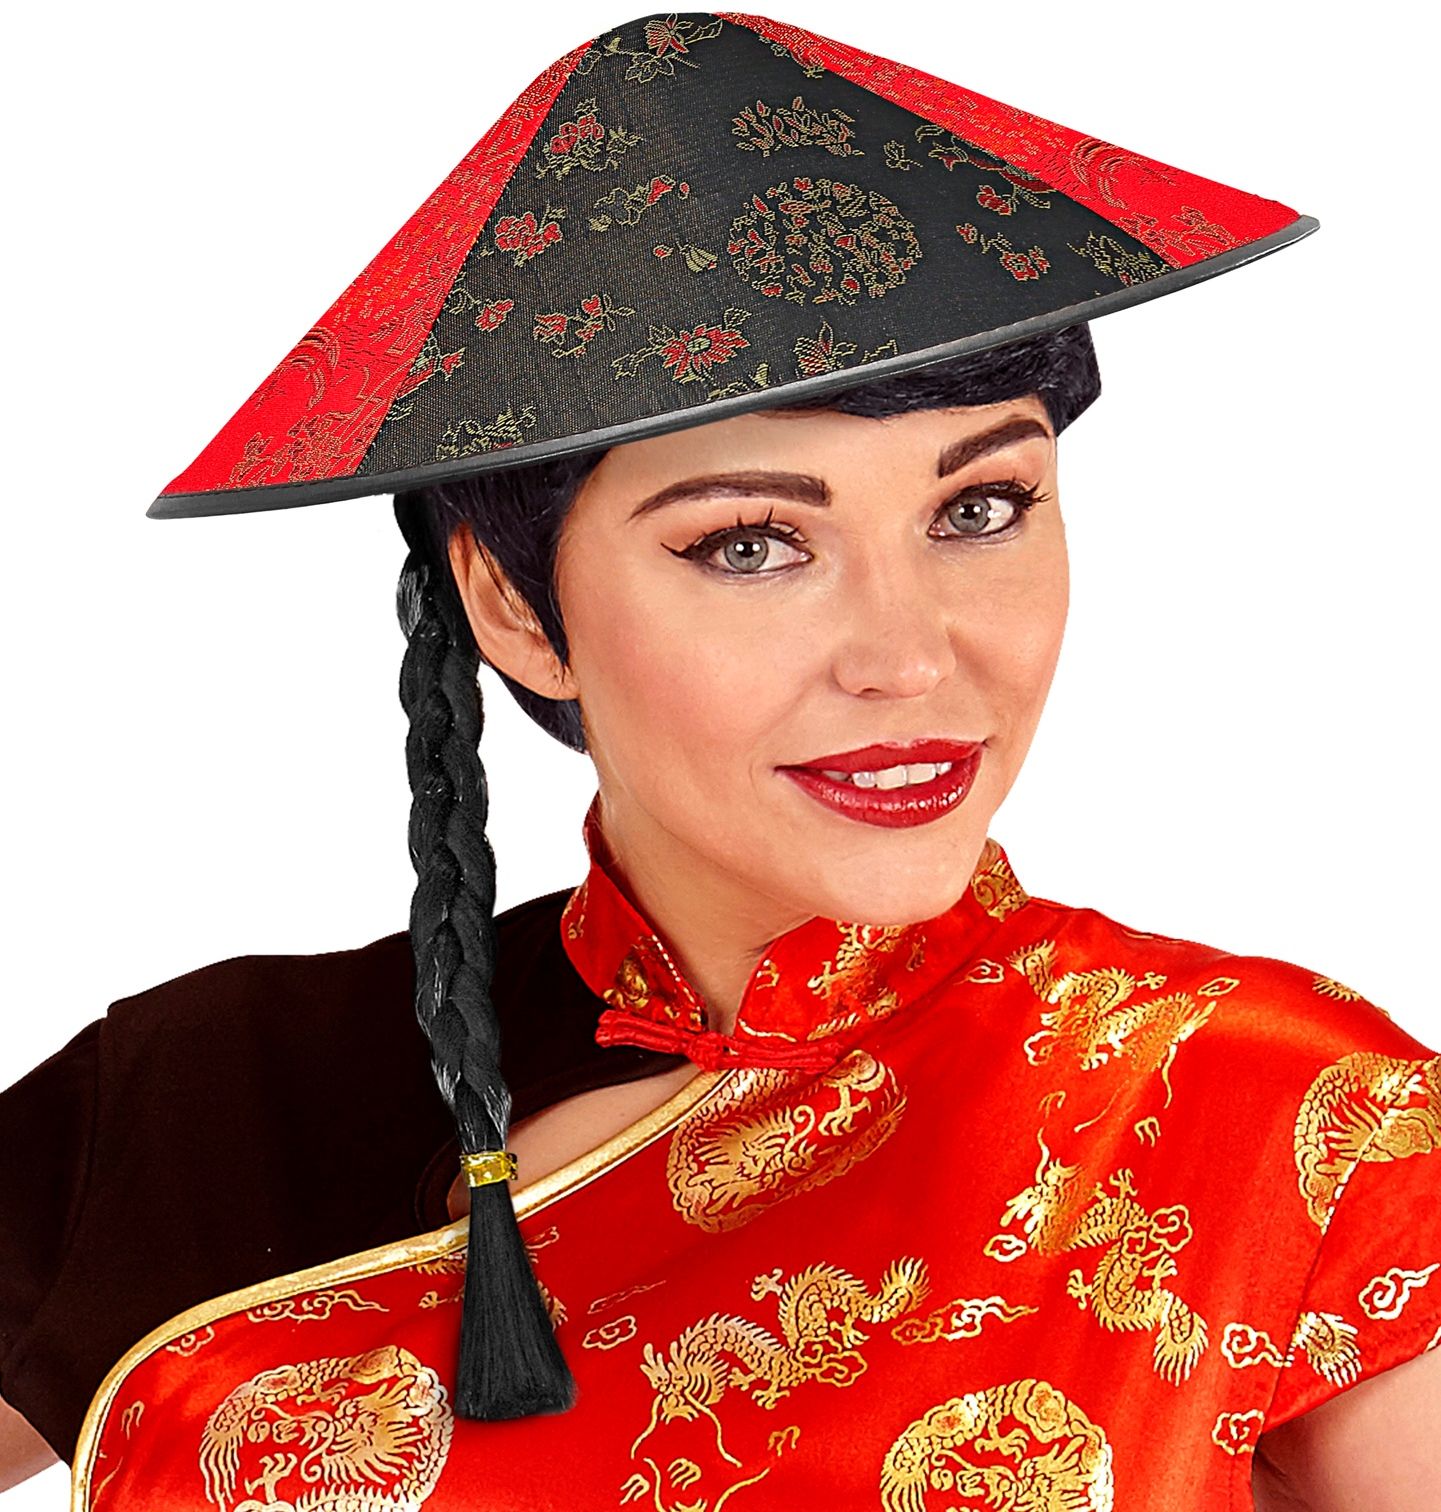 Aziatische hoed